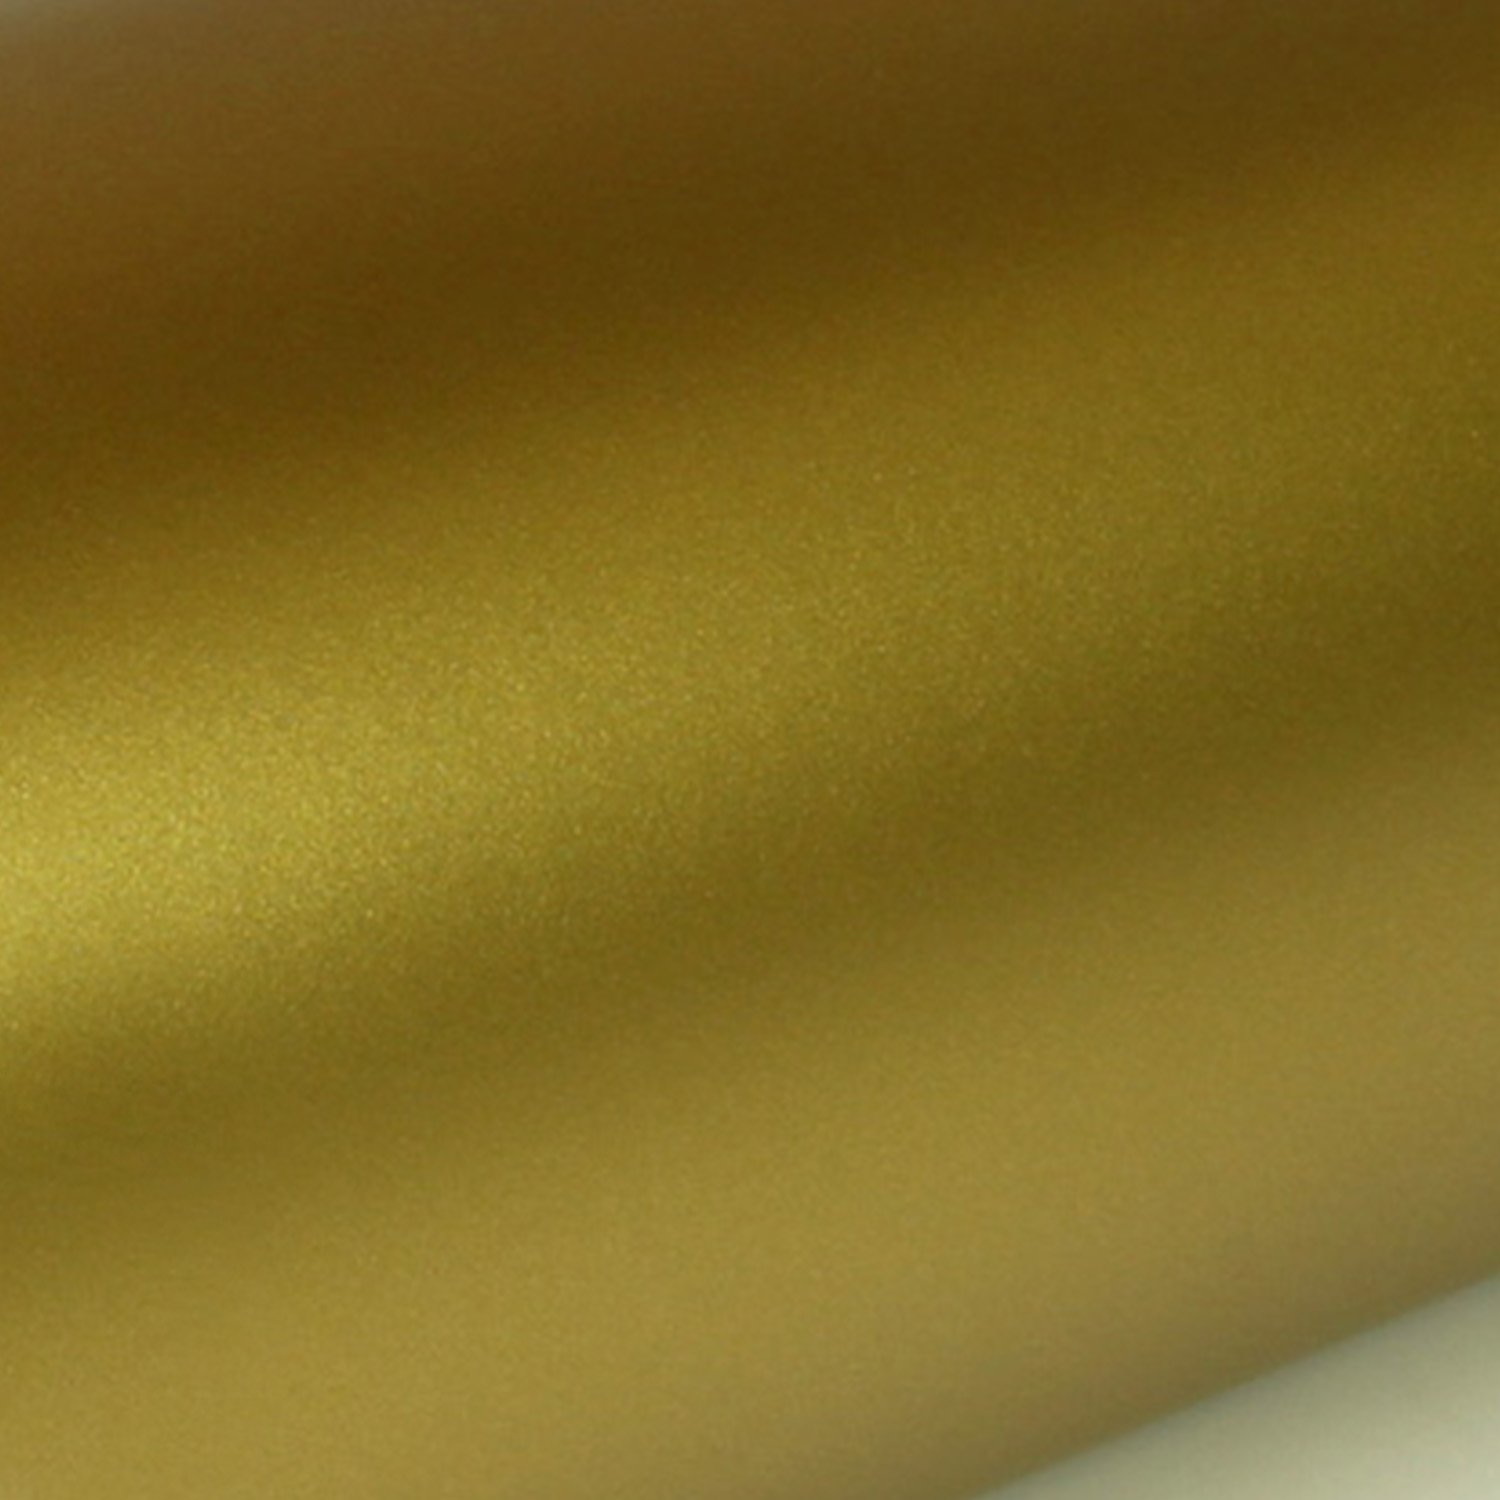 Wandtattoo Punkte Mix Gold Silber Kupfer in 3 Größen 110 Stück selbstklebend Wandsticker Aufkleber